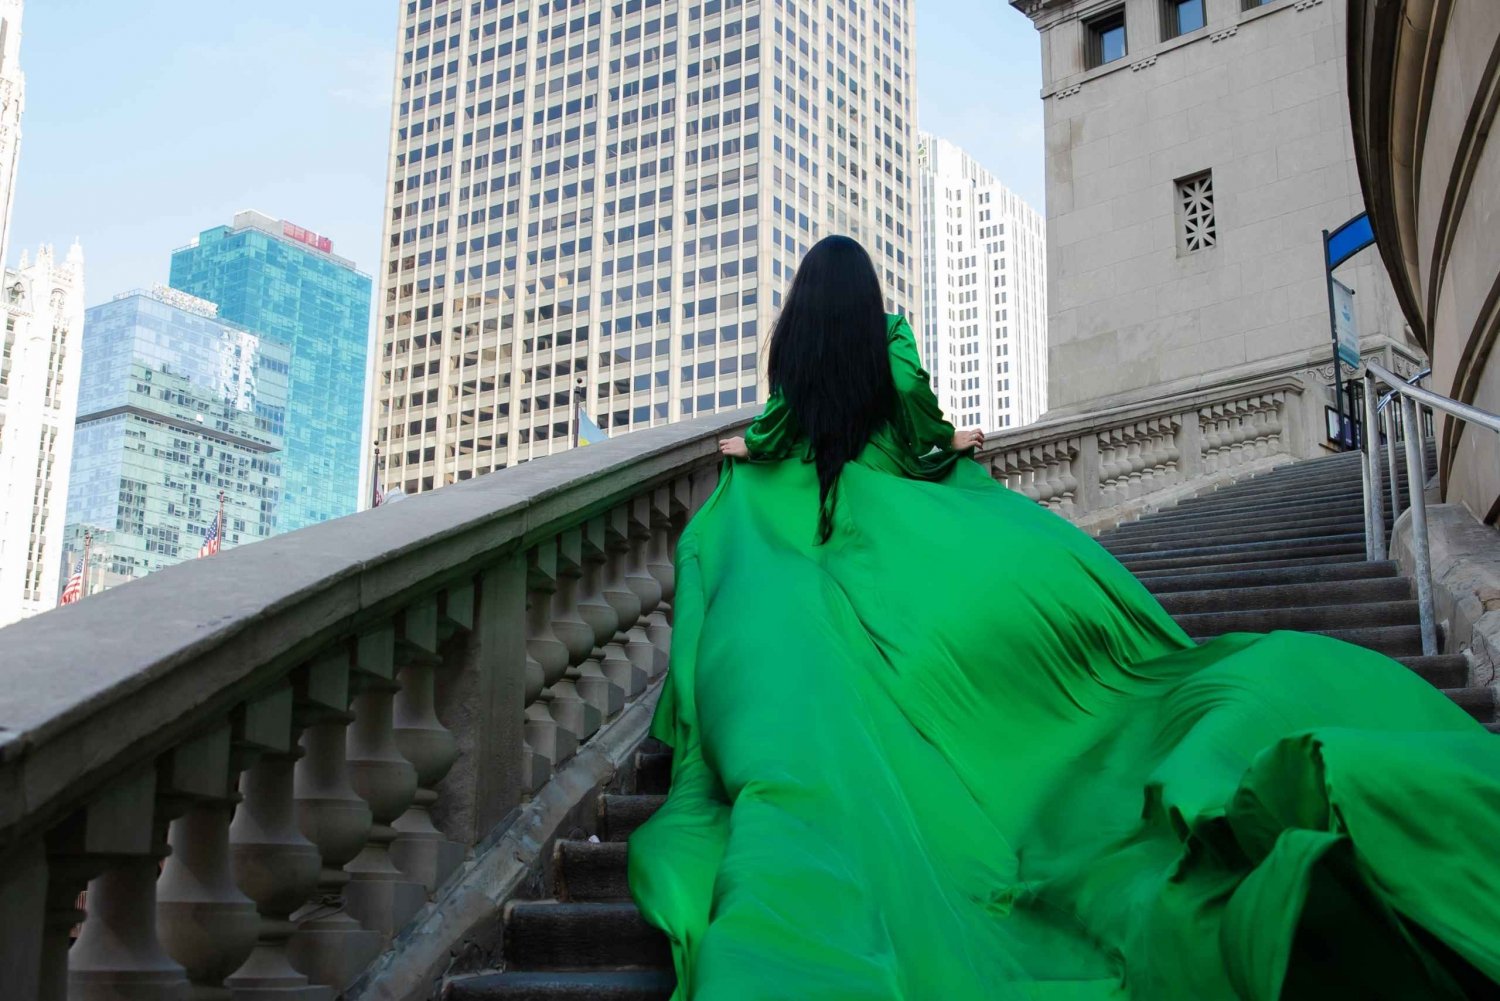 Chicago: Luksusowa prywatna sesja zdjęciowa w latającej sukience 2 lokalizacje